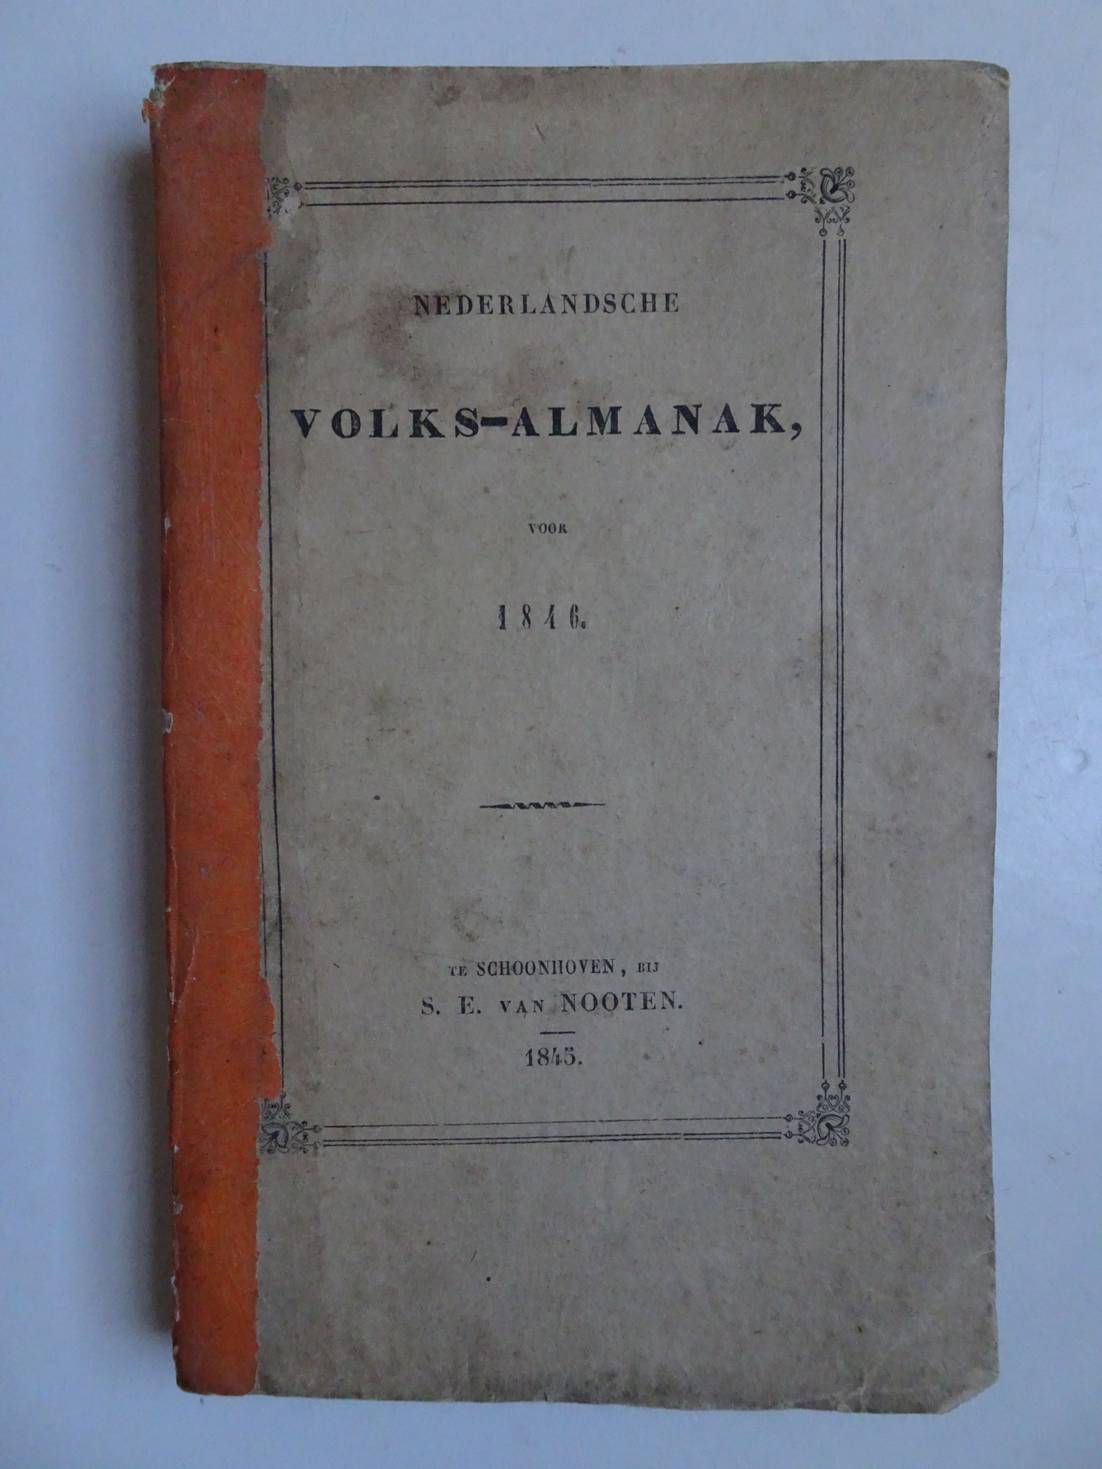 -. - Nederlandsche volks-almanak voor 1846.